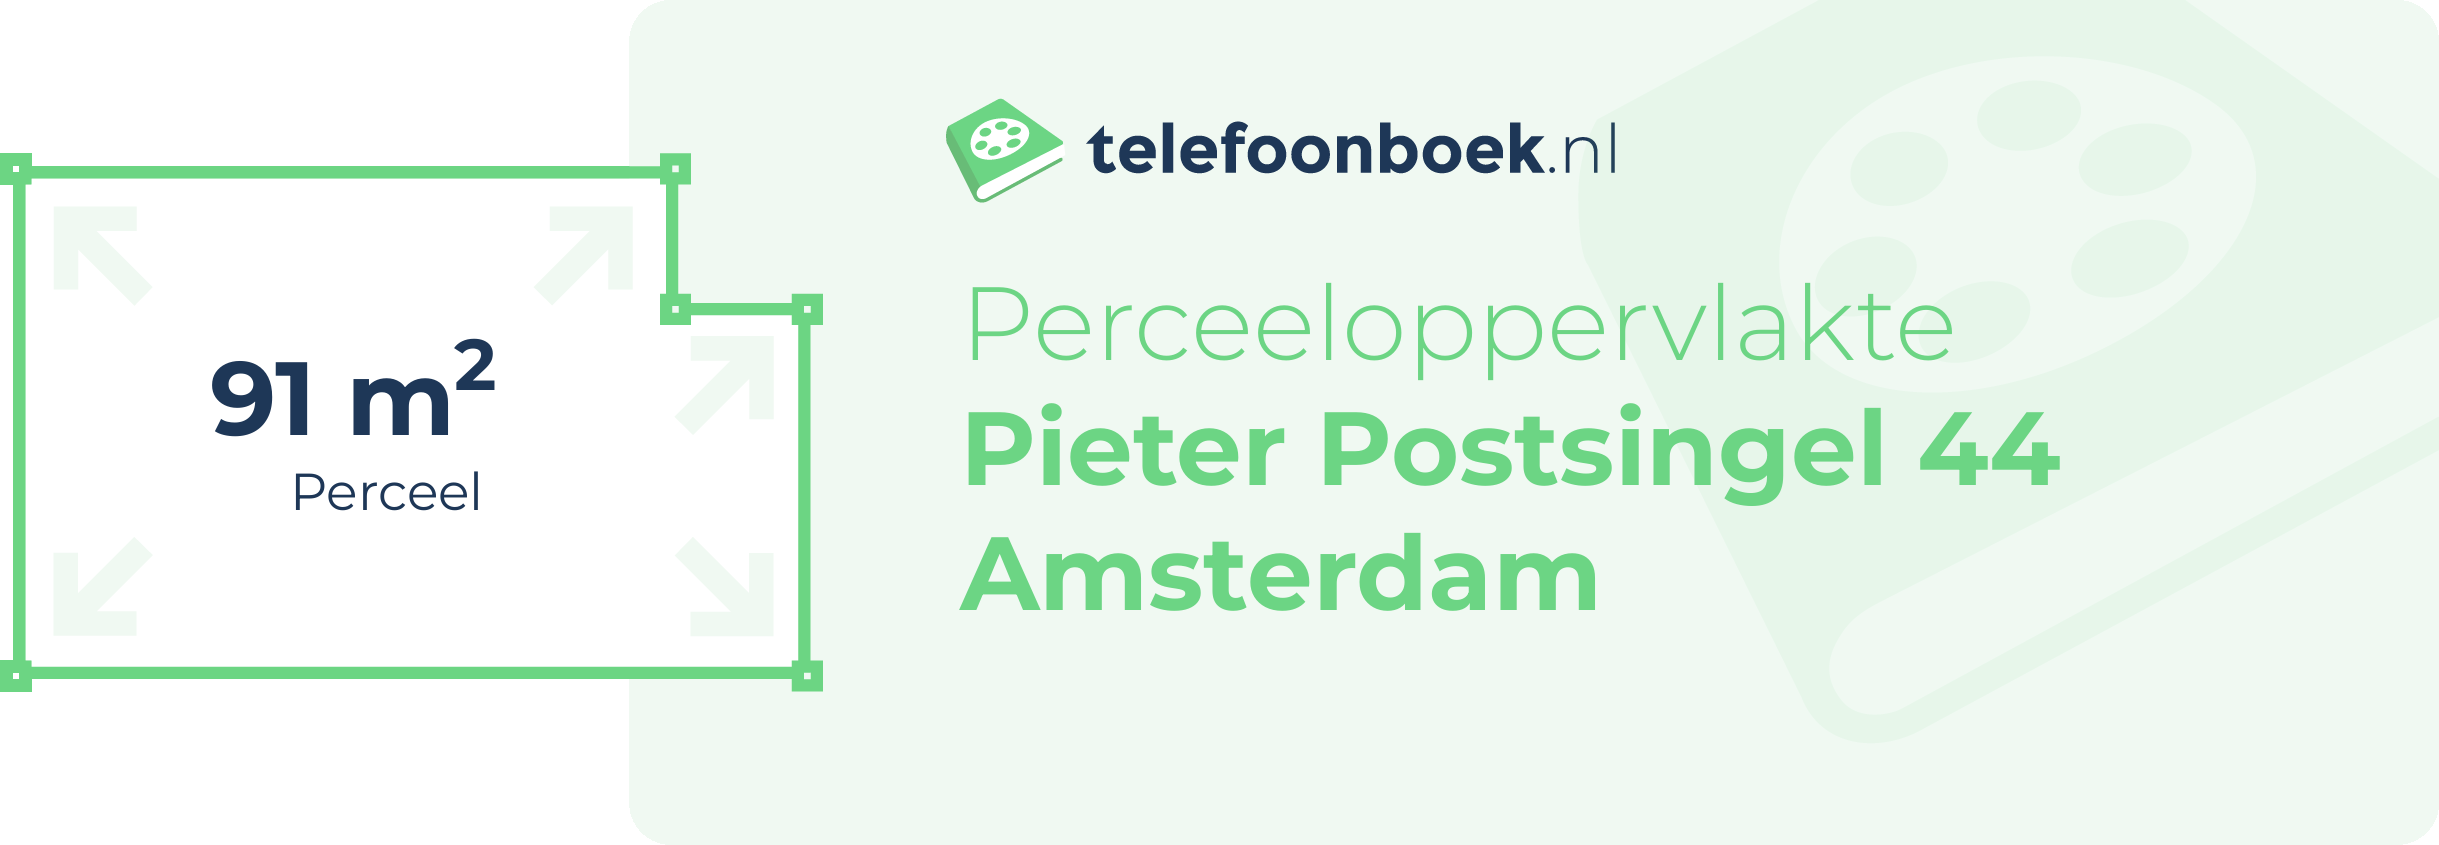 Perceeloppervlakte Pieter Postsingel 44 Amsterdam